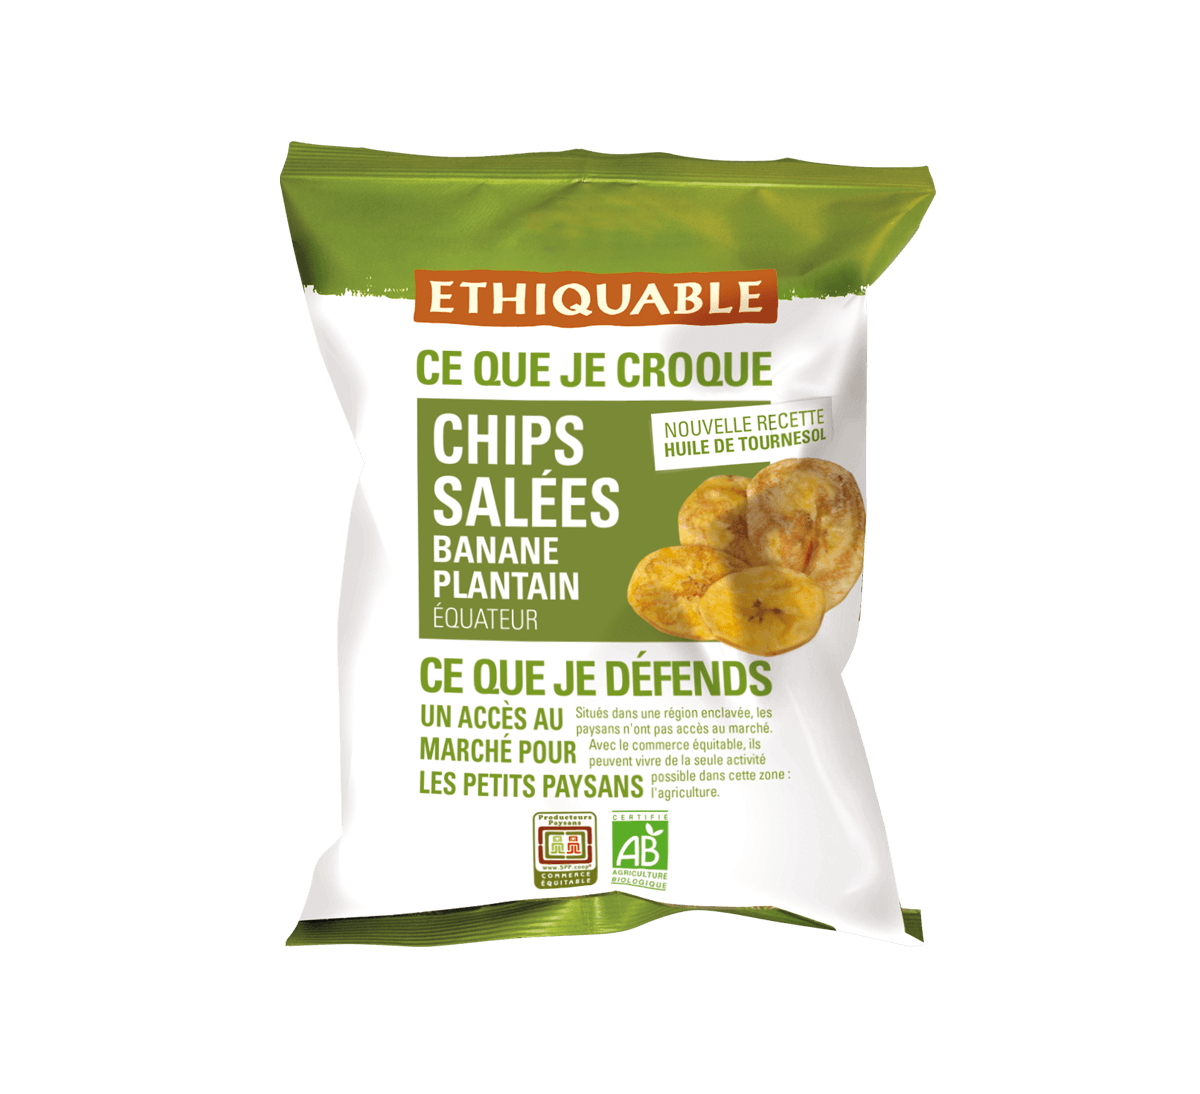 Ethiquable - Chips salées de banane plantain bio issues du Commerce Equitable, avec huile de tournesol